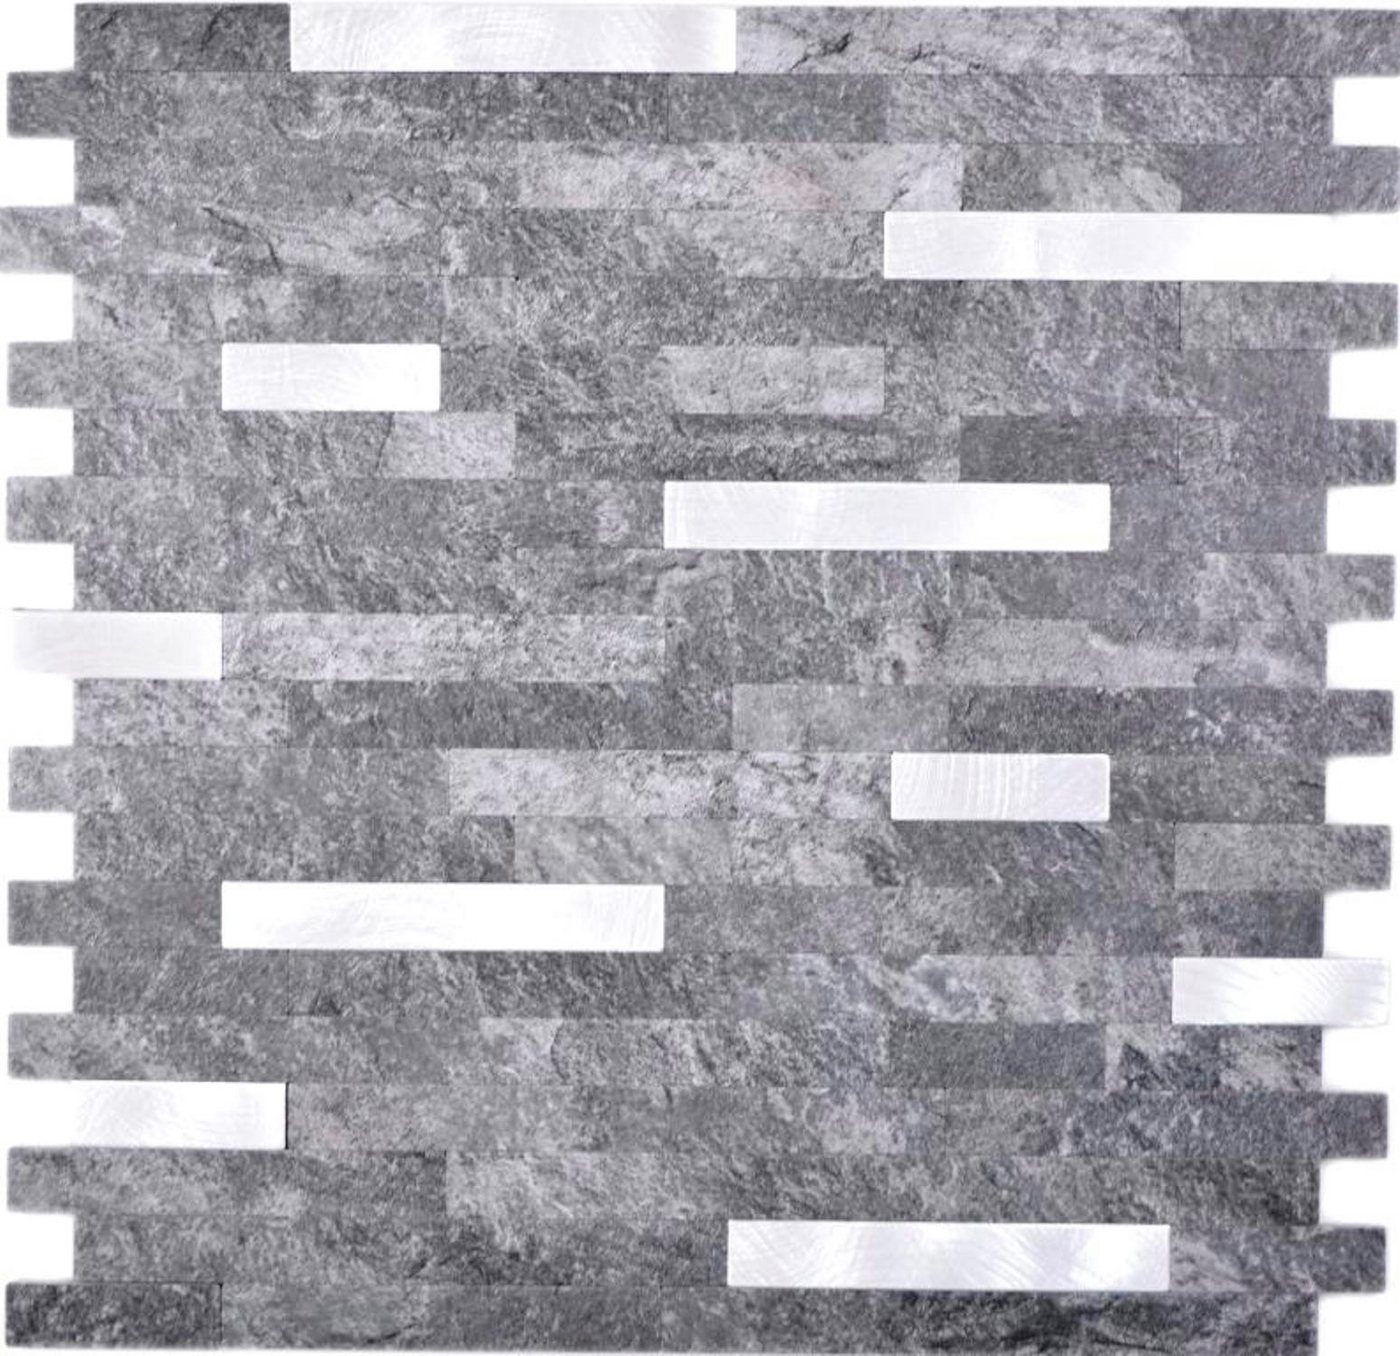 Mosani Dekorpaneele Wandpaneele selbstklebend in Steinoptik schwarz silber, BxL: 29,00x30,00 cm, 0,08 qm, Spritzwasserbereich geeignet, Küchenrückwand Spritzschutz von Mosani